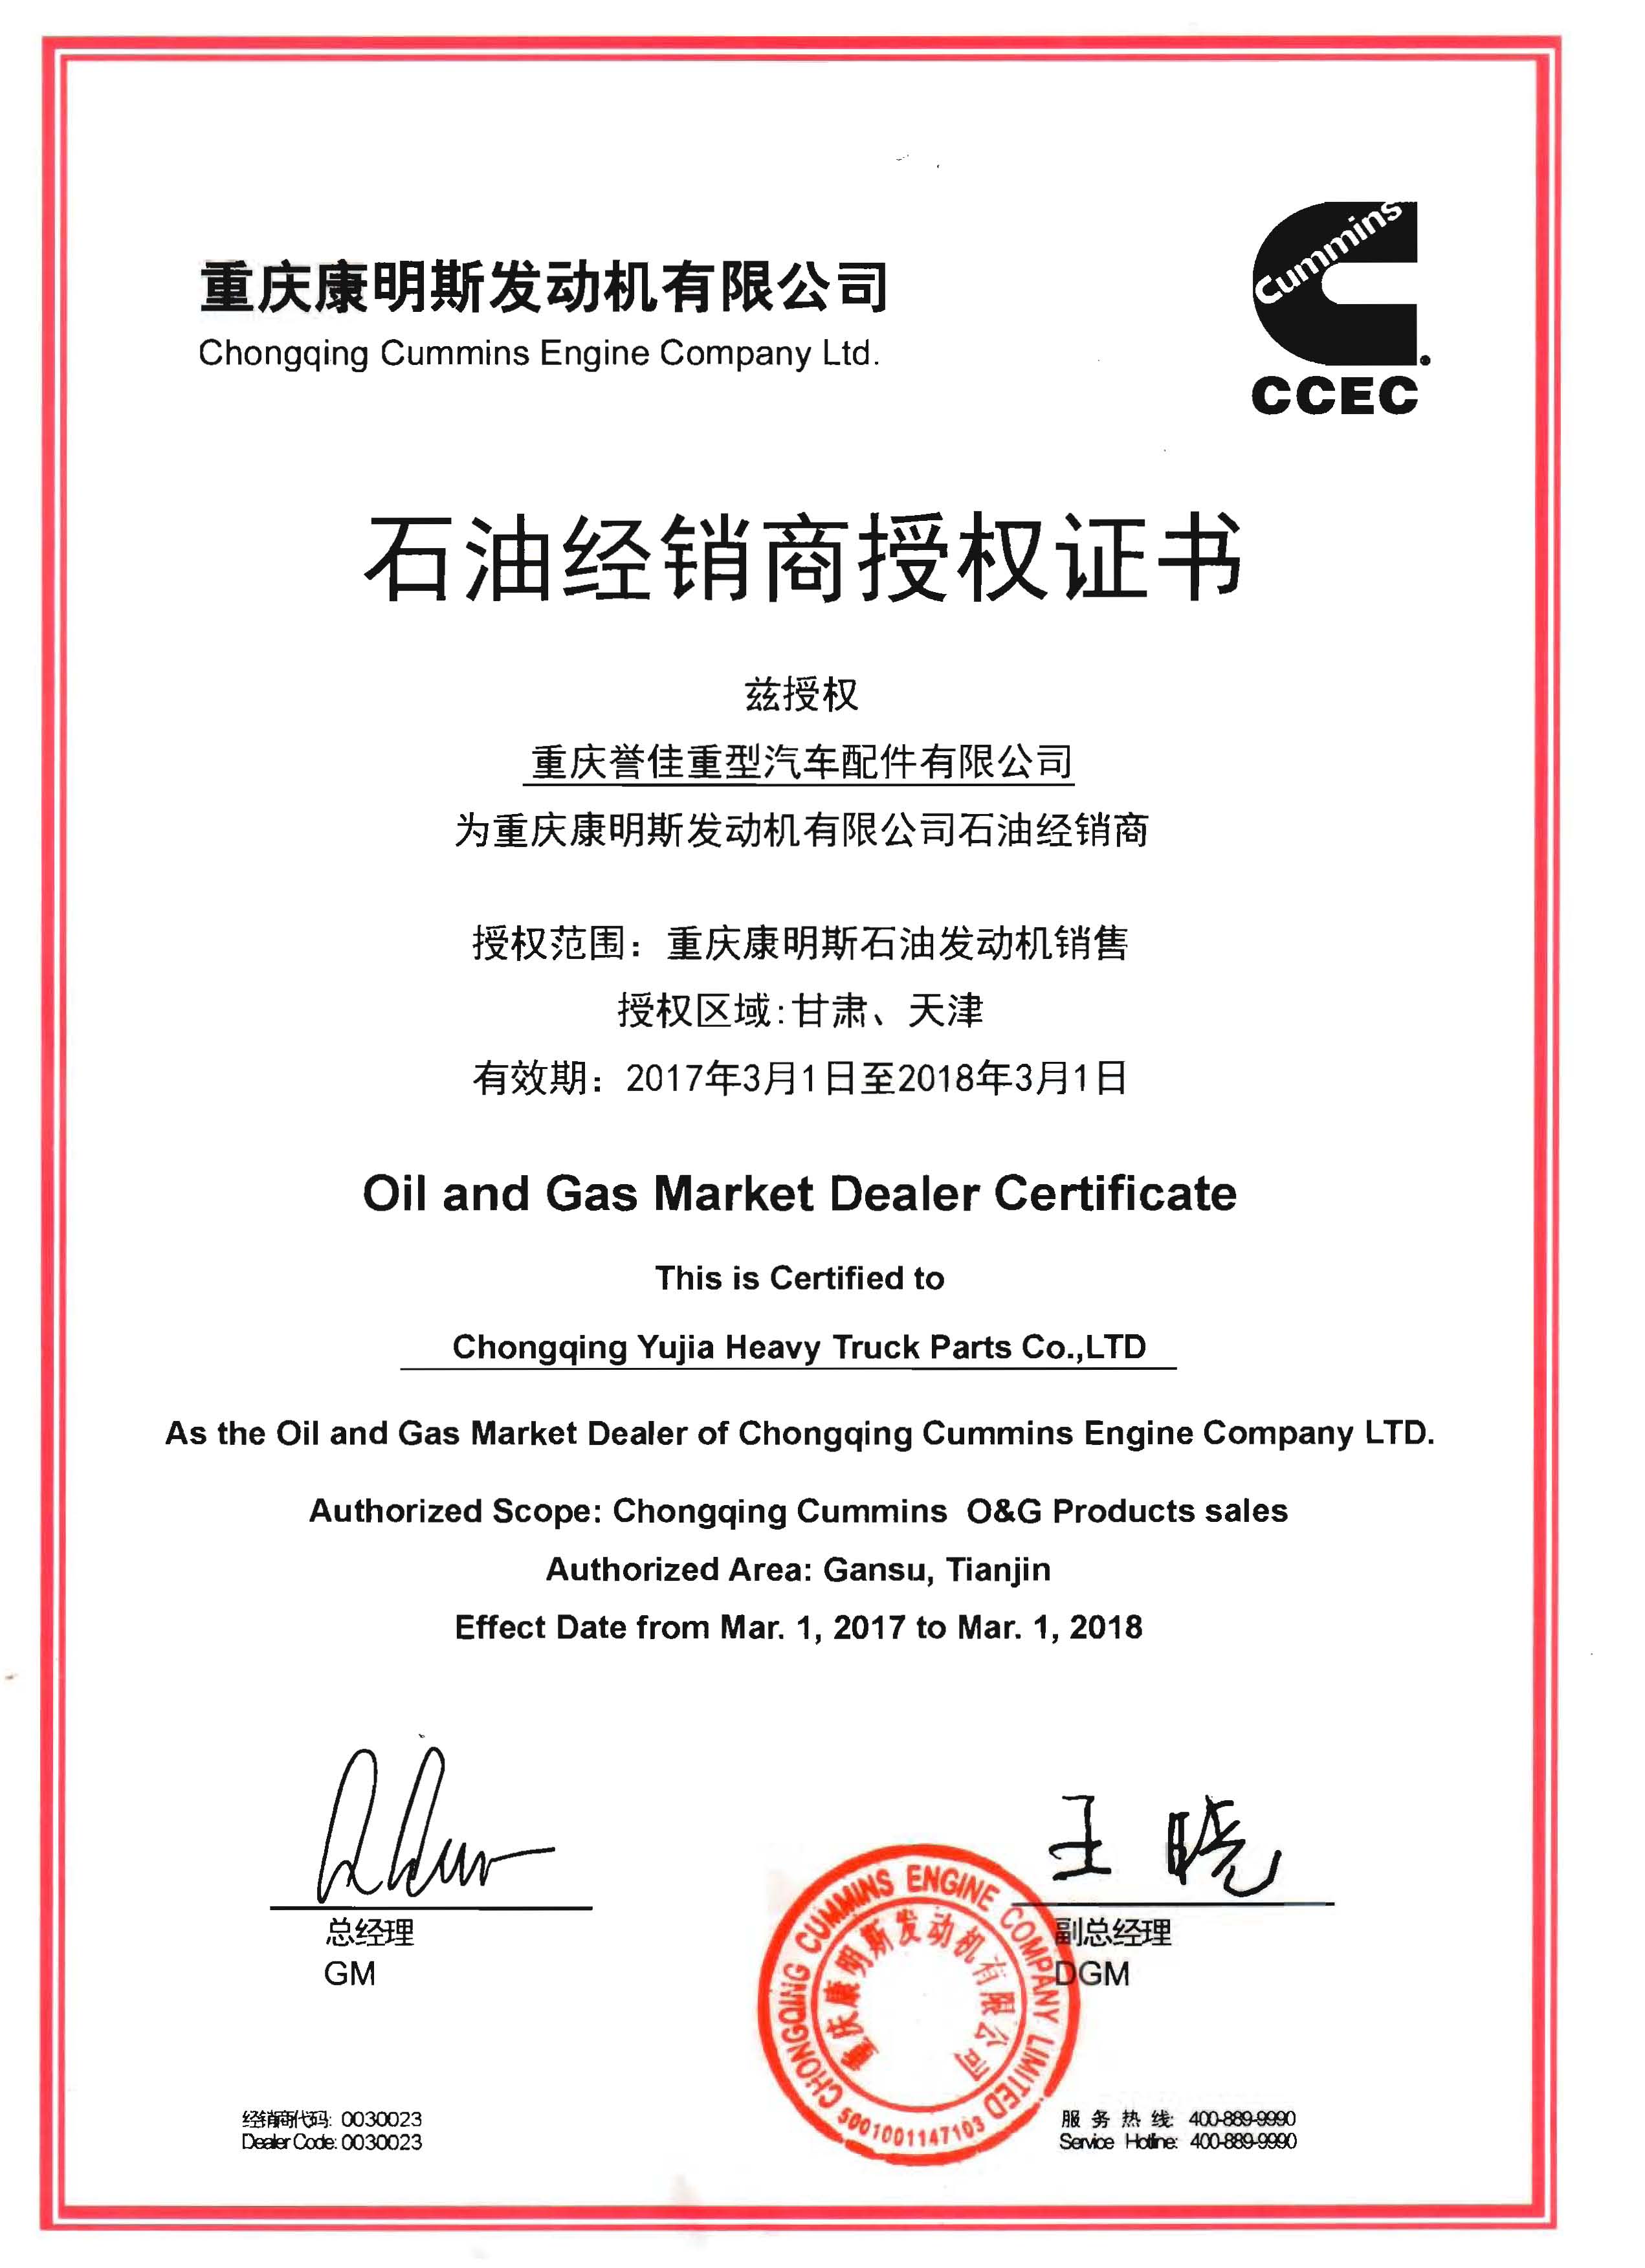 重庆康明斯石油经销商授权证书2017